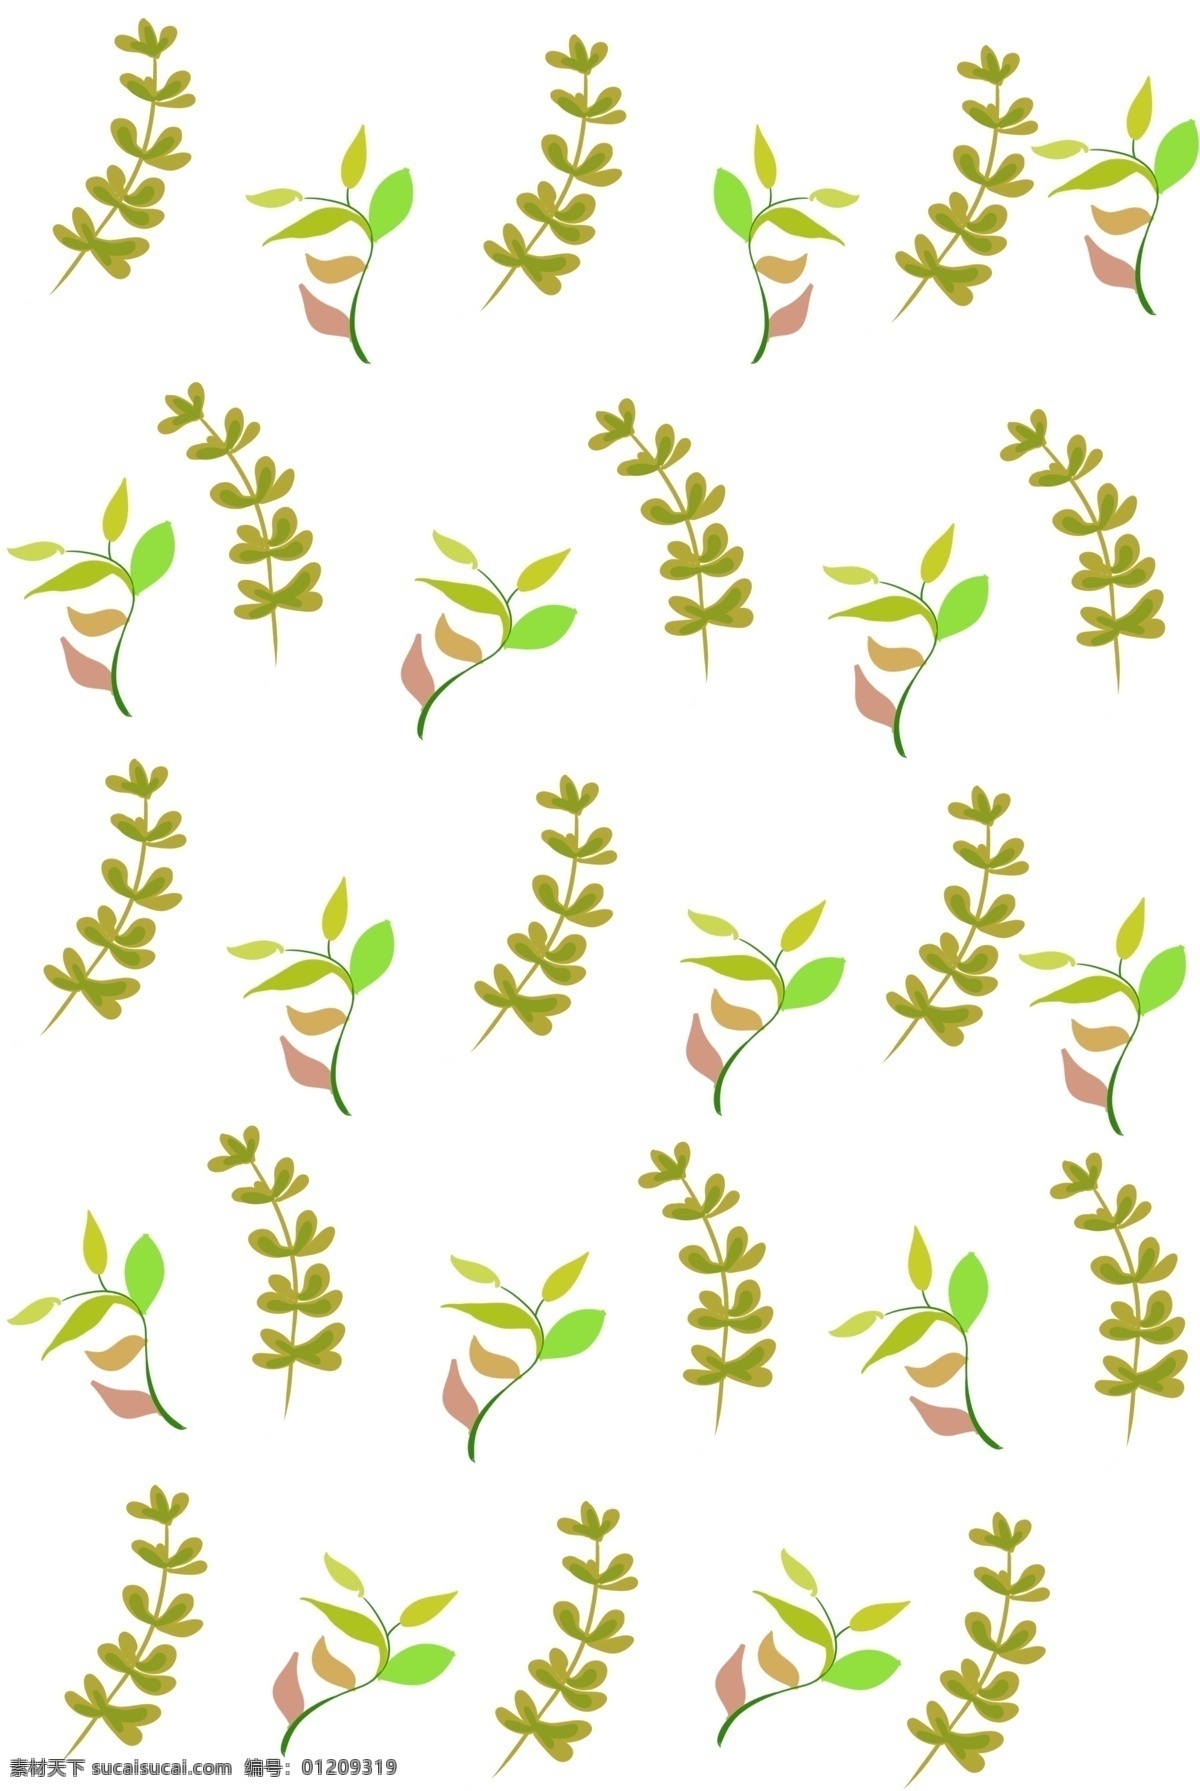 手绘 美丽 植物 底纹 卡通插画 手绘植物插画 创意的底纹 漂亮的植物 绿色的树枝 美丽的底纹